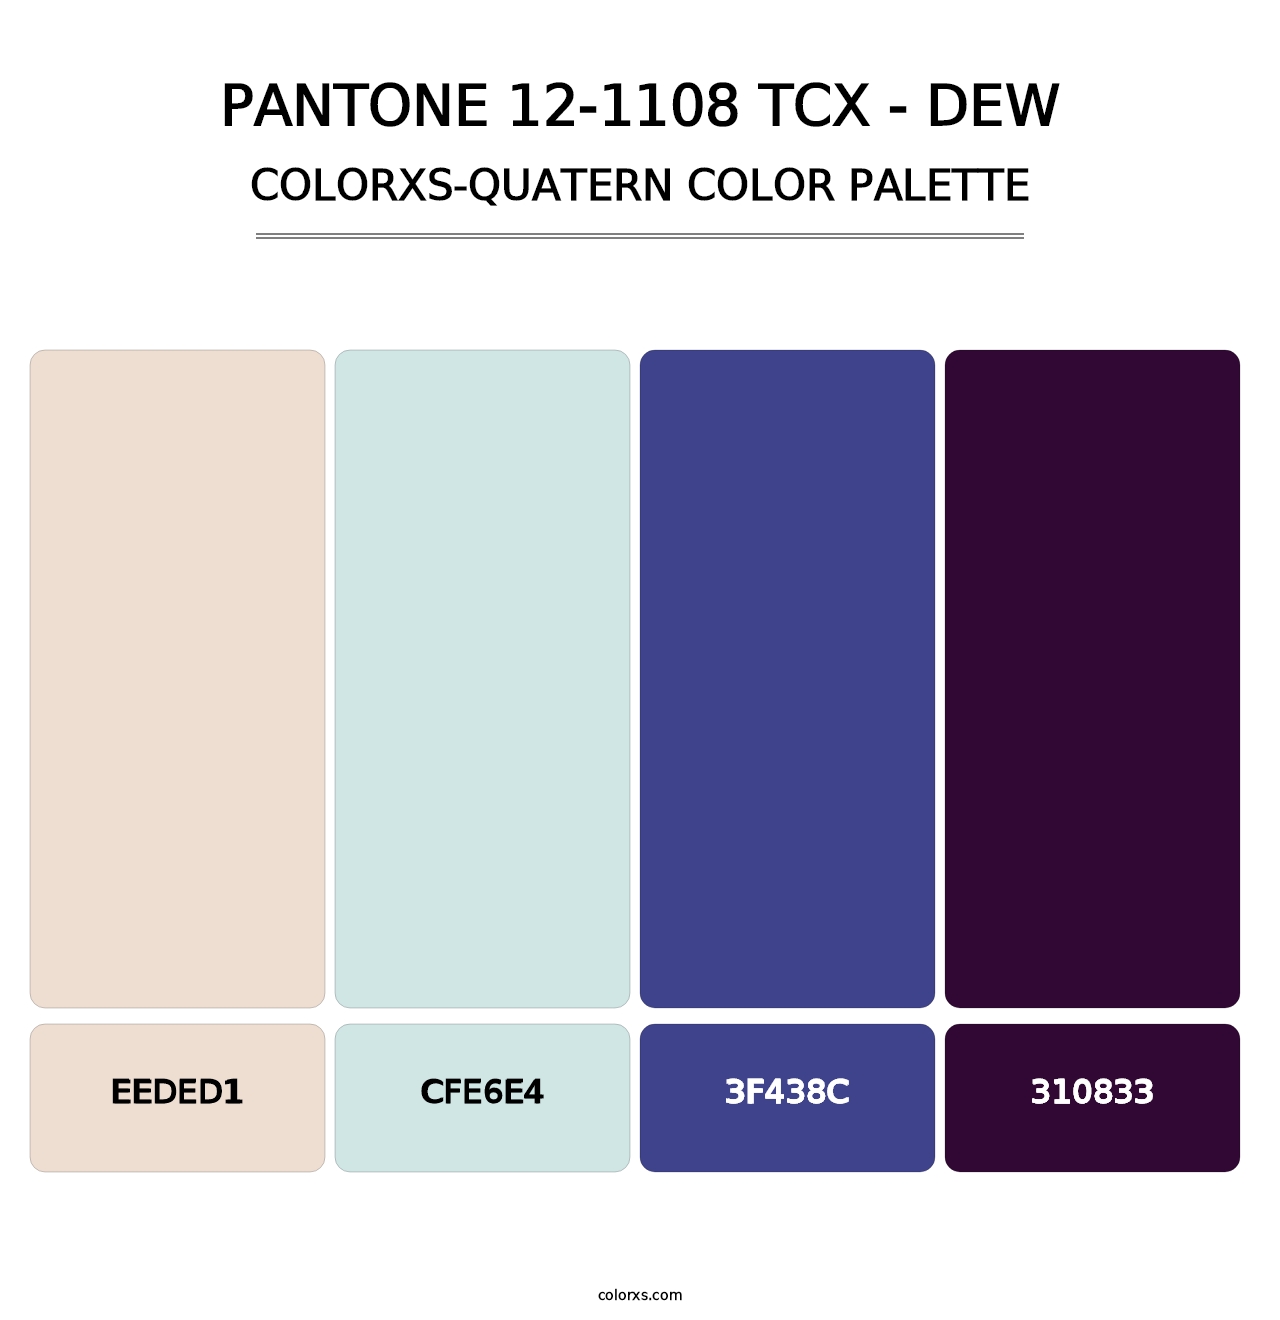 PANTONE 12-1108 TCX - Dew - Colorxs Quatern Palette